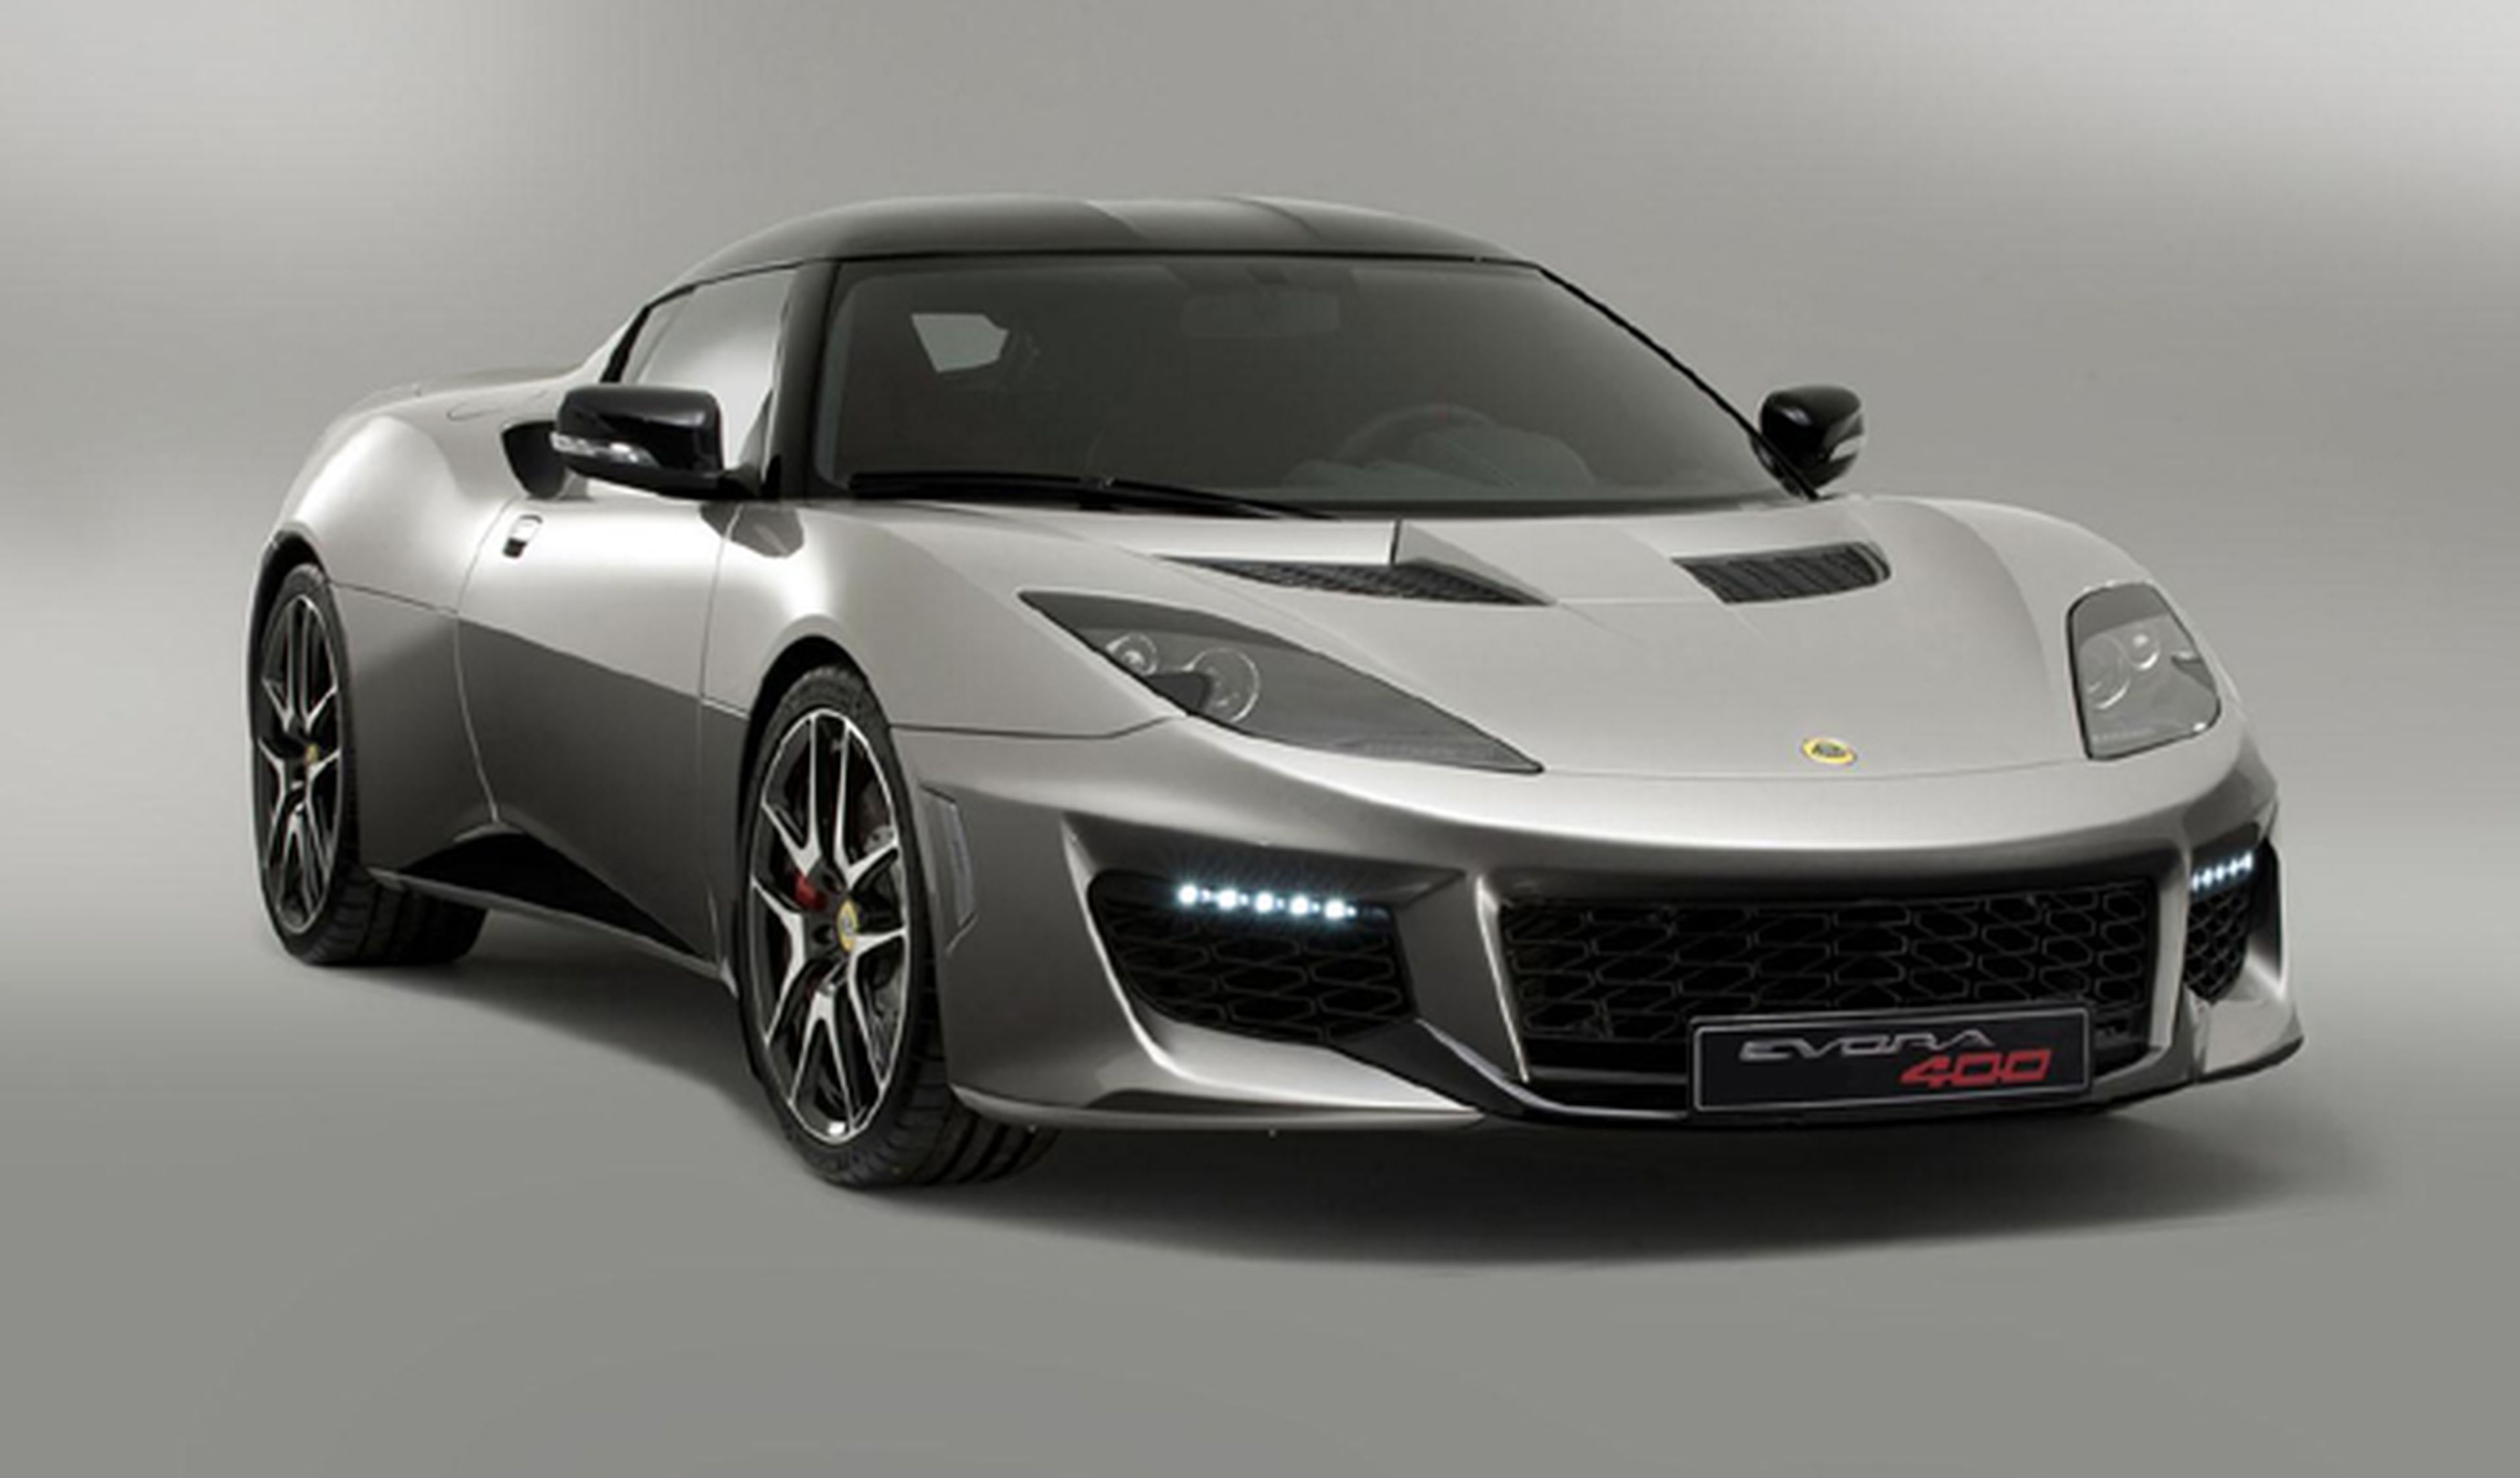 Lotus presentará dos deportivos en el Salón de Ginebra